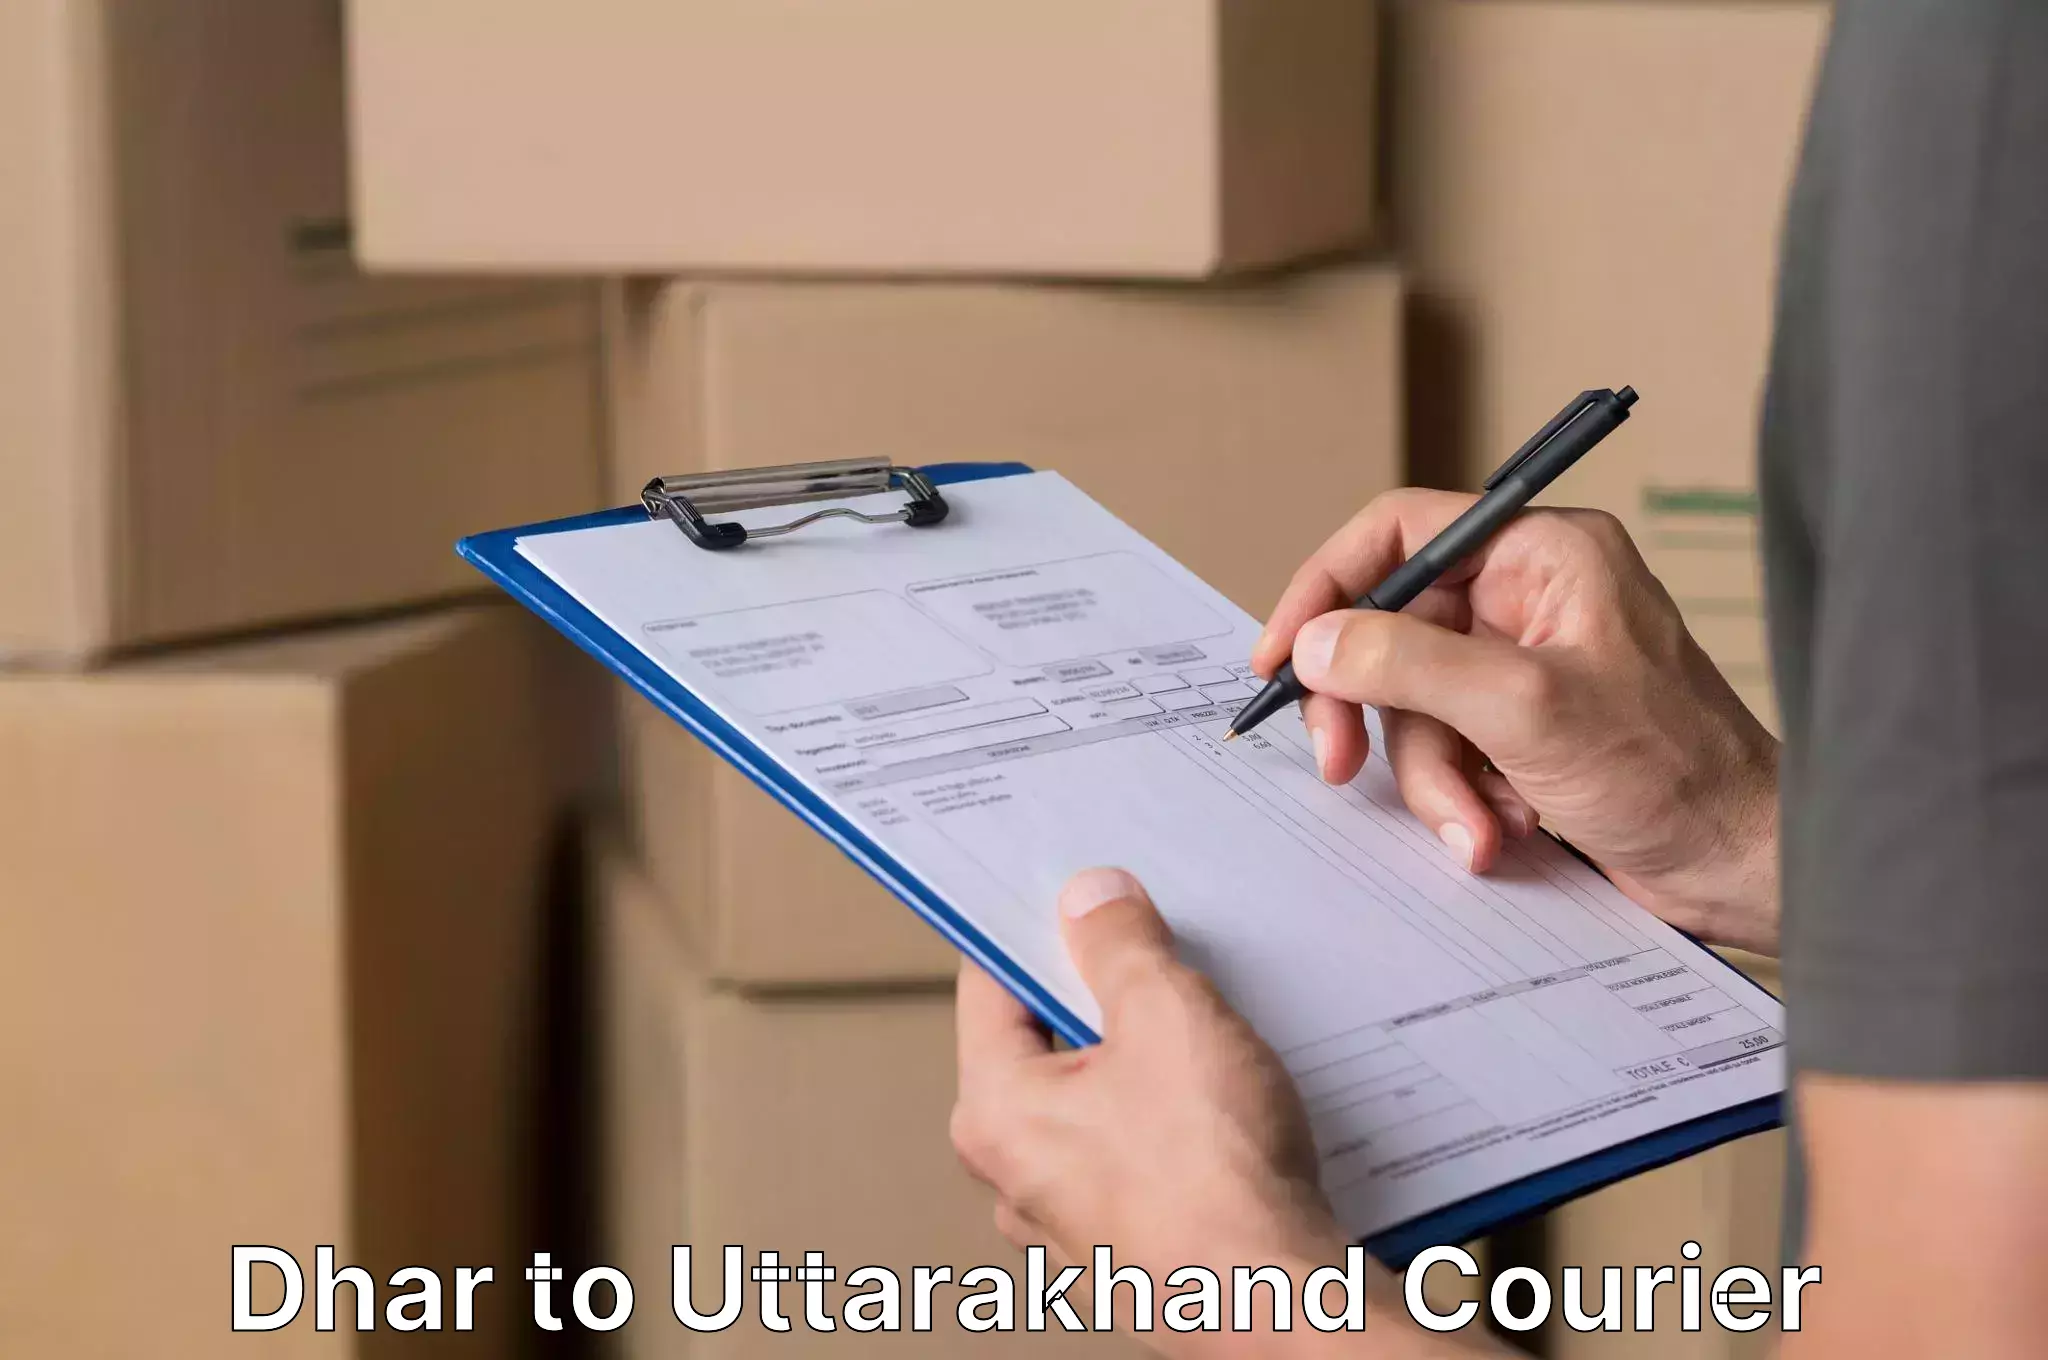 Safe household movers Dhar to Uttarakhand